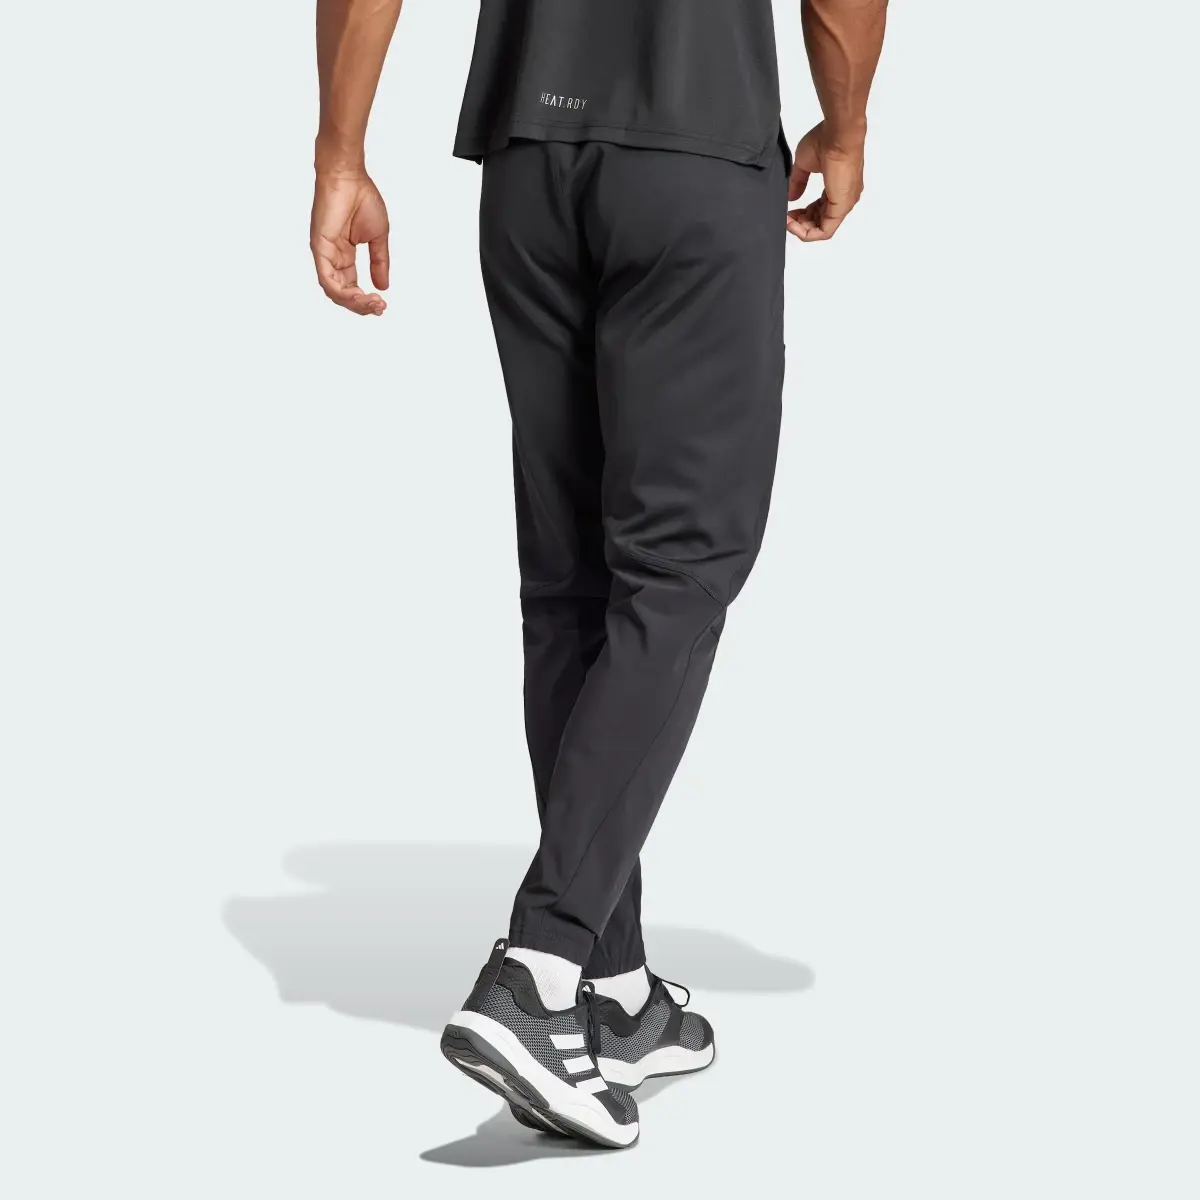 Adidas Pantaloni Designed for Training Workout. 2